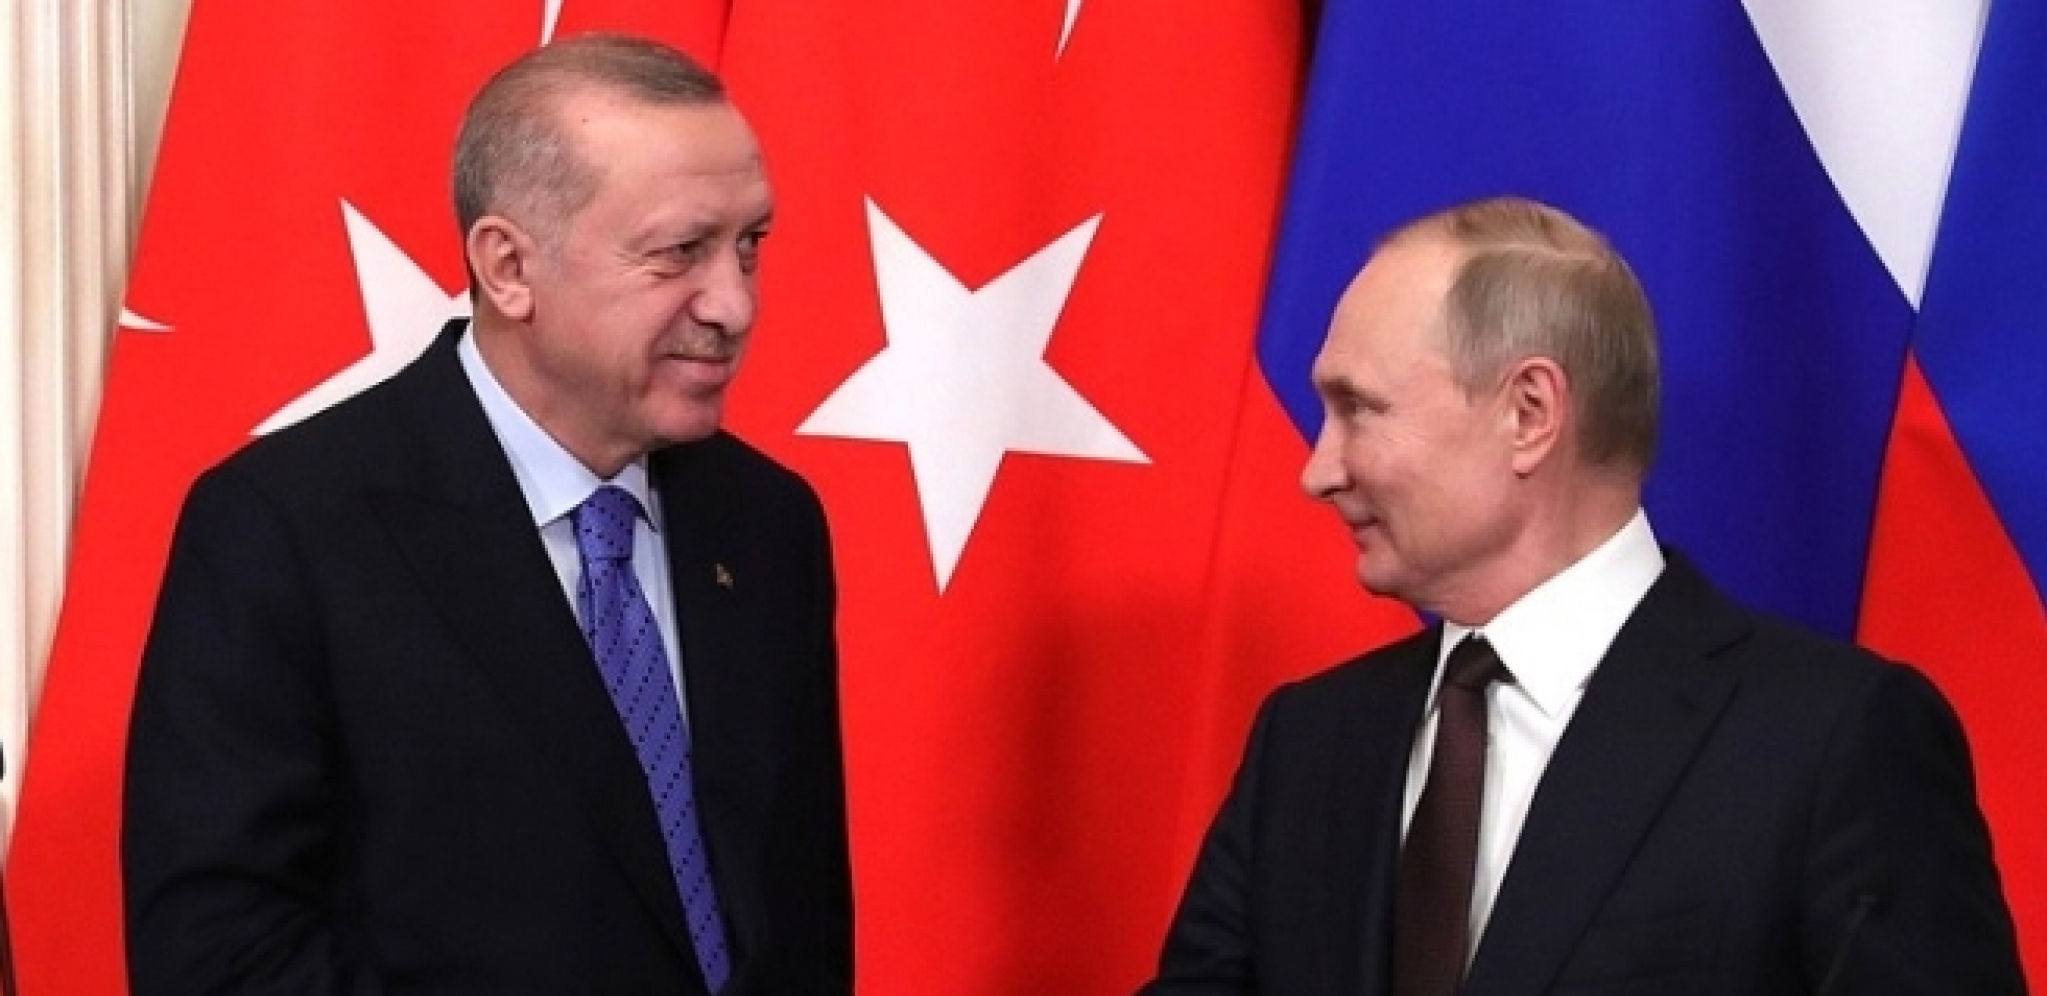 KREMLJ SAOPŠTIO: Razgovor Putina i Erdogana u Sočiju 5. avgusta